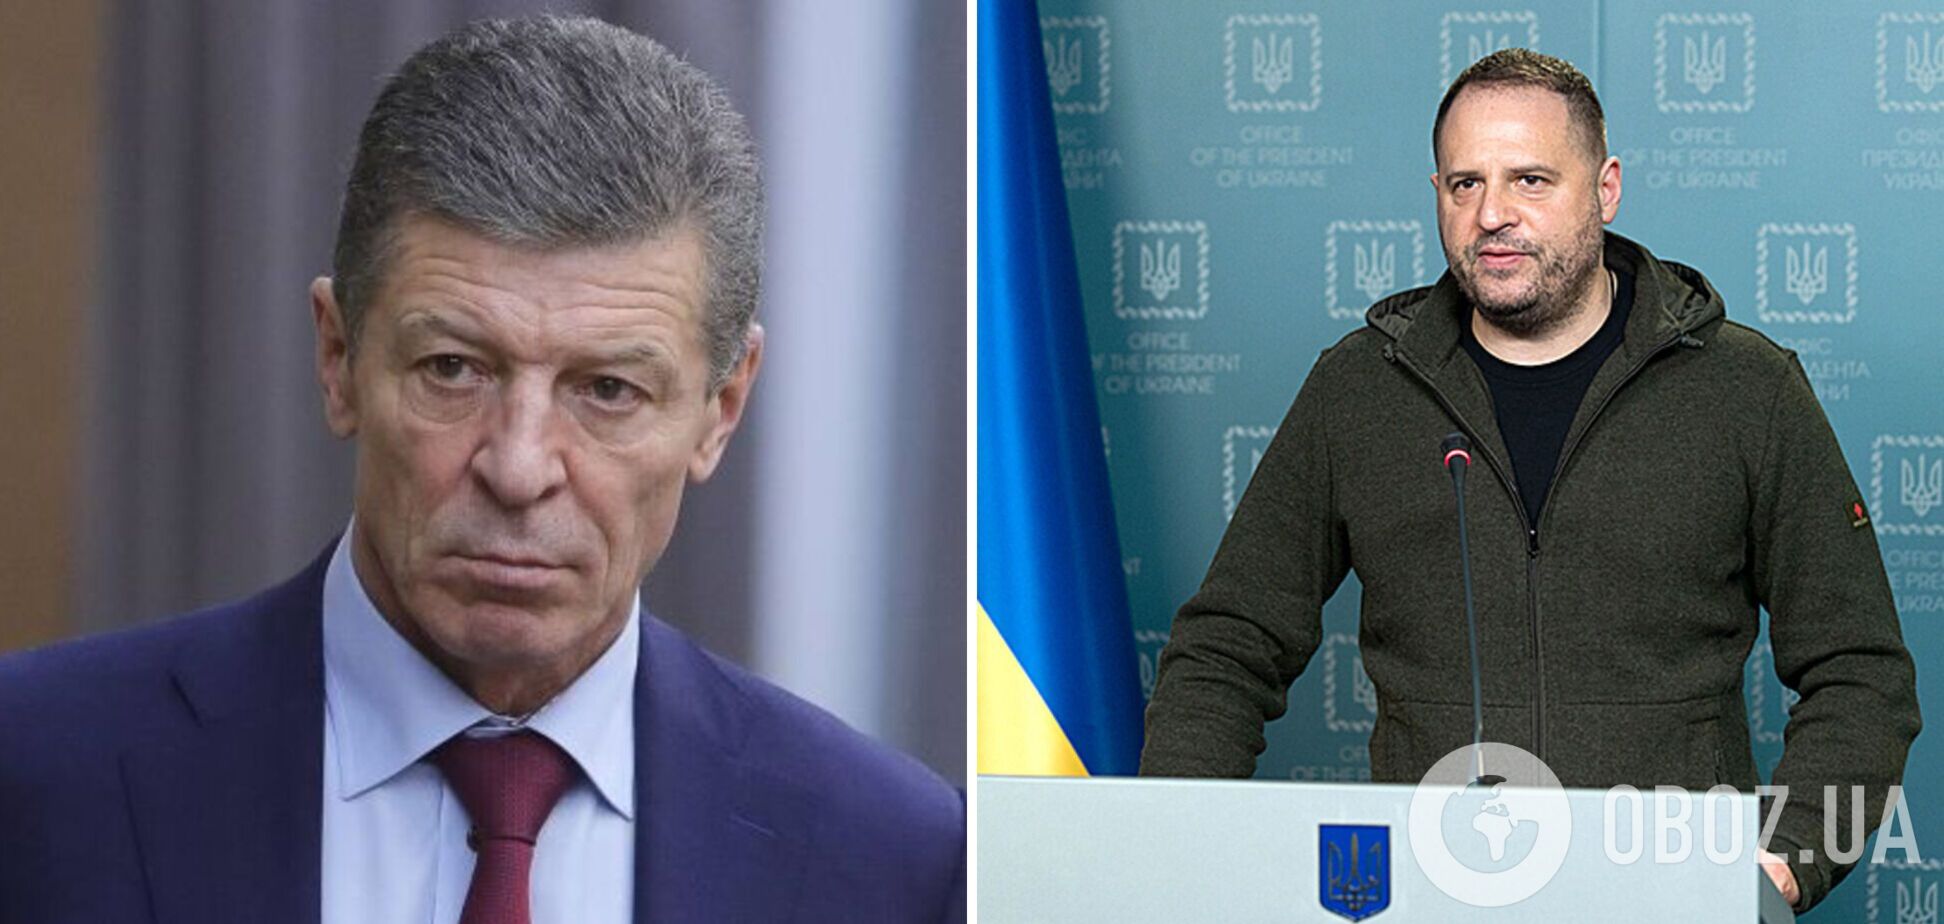 Козак 24 февраля предлагал Украине сдаться: стало известно о звонке в ОПУ в первые часы после вторжения РФ